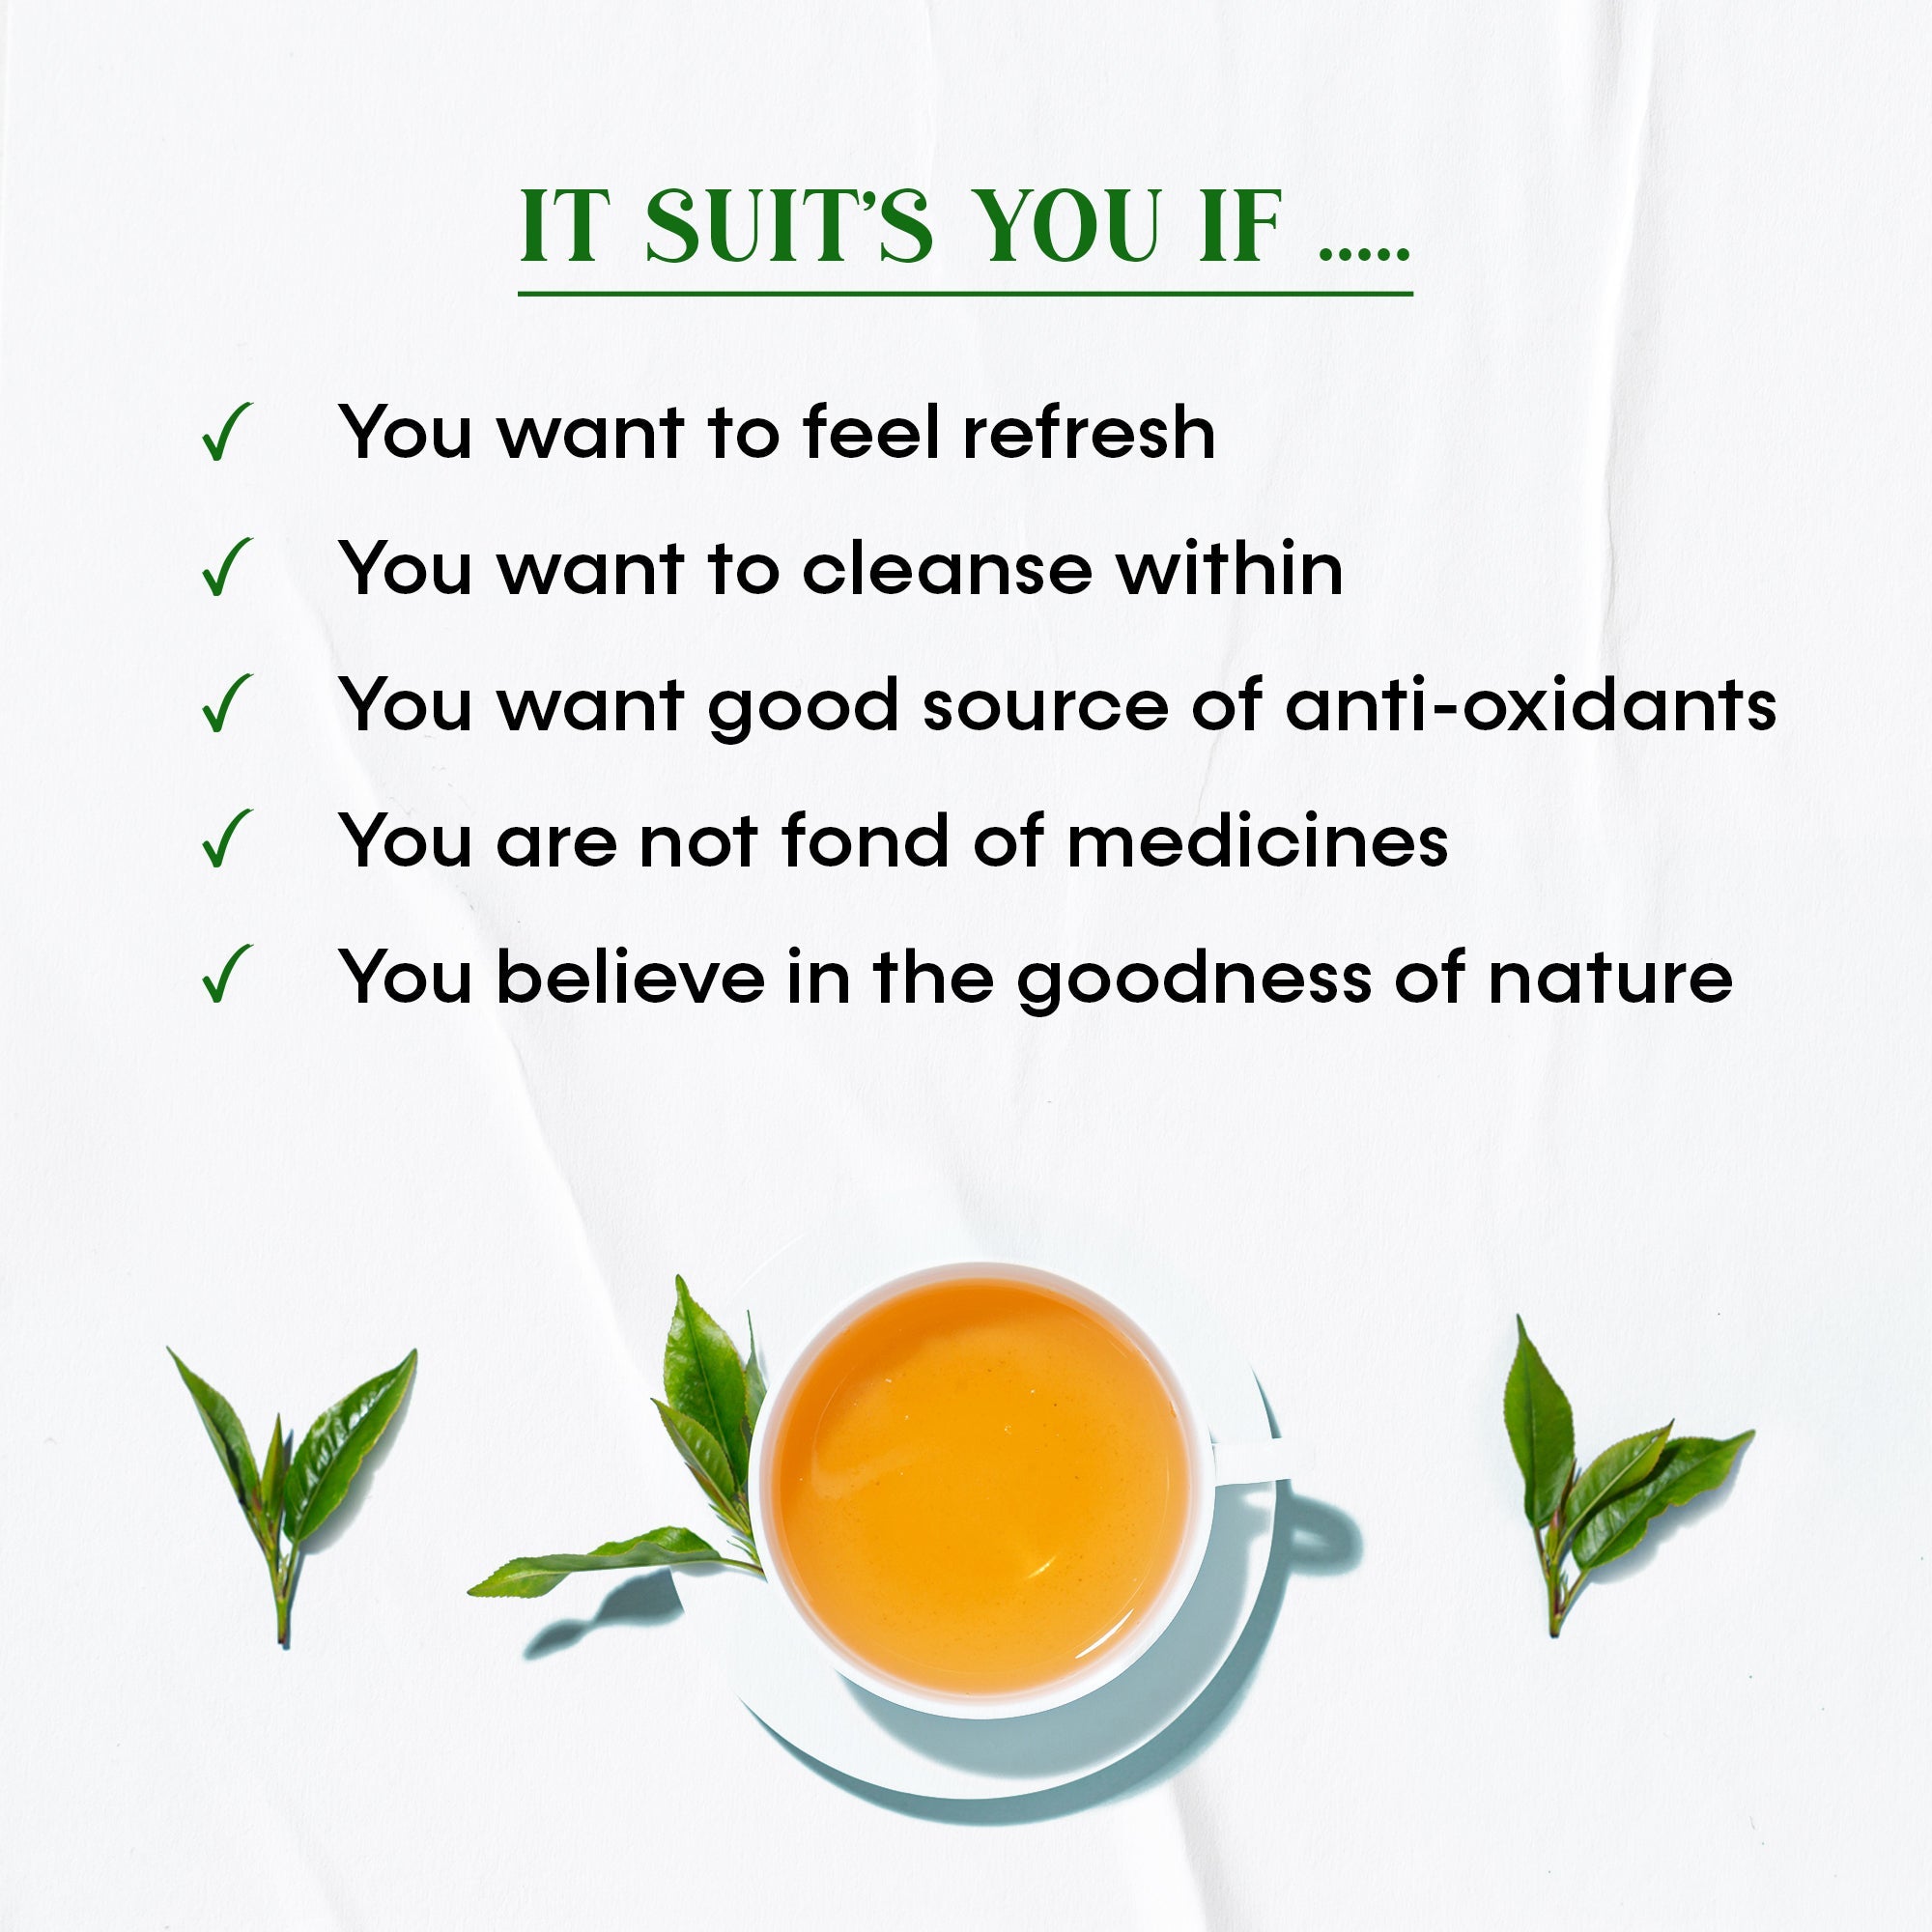 Oraah Himalayan Green Tea